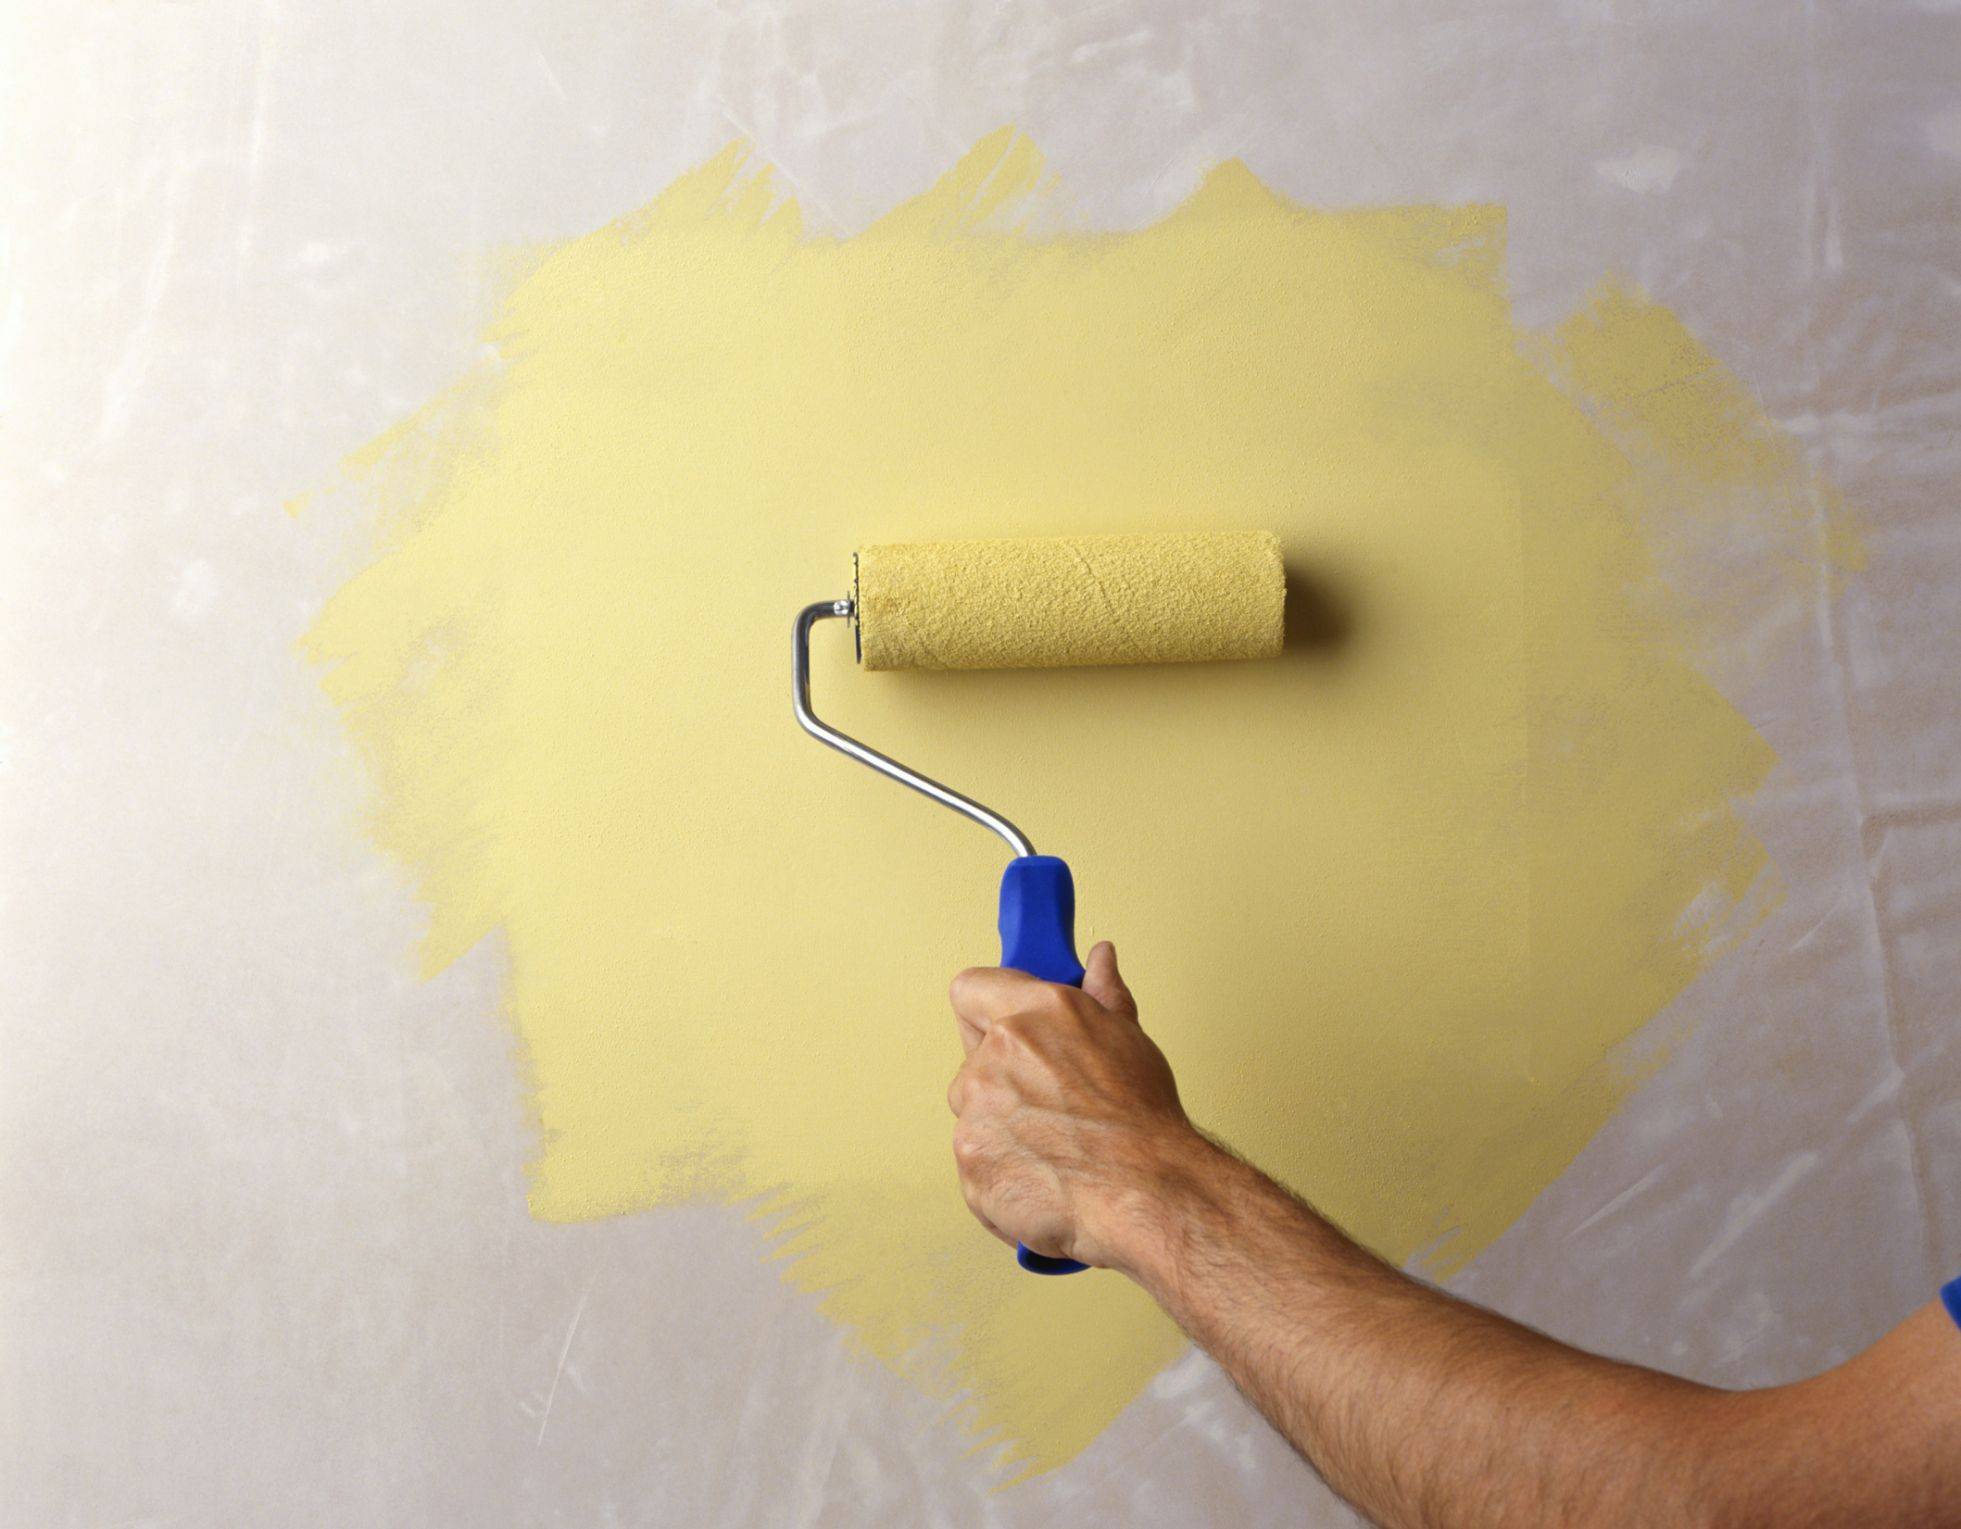 Краска для обоев: как красить под покраску на стене самостоятельно, можно ли покрасить на флизелиновой основе своими руками, какая лучше